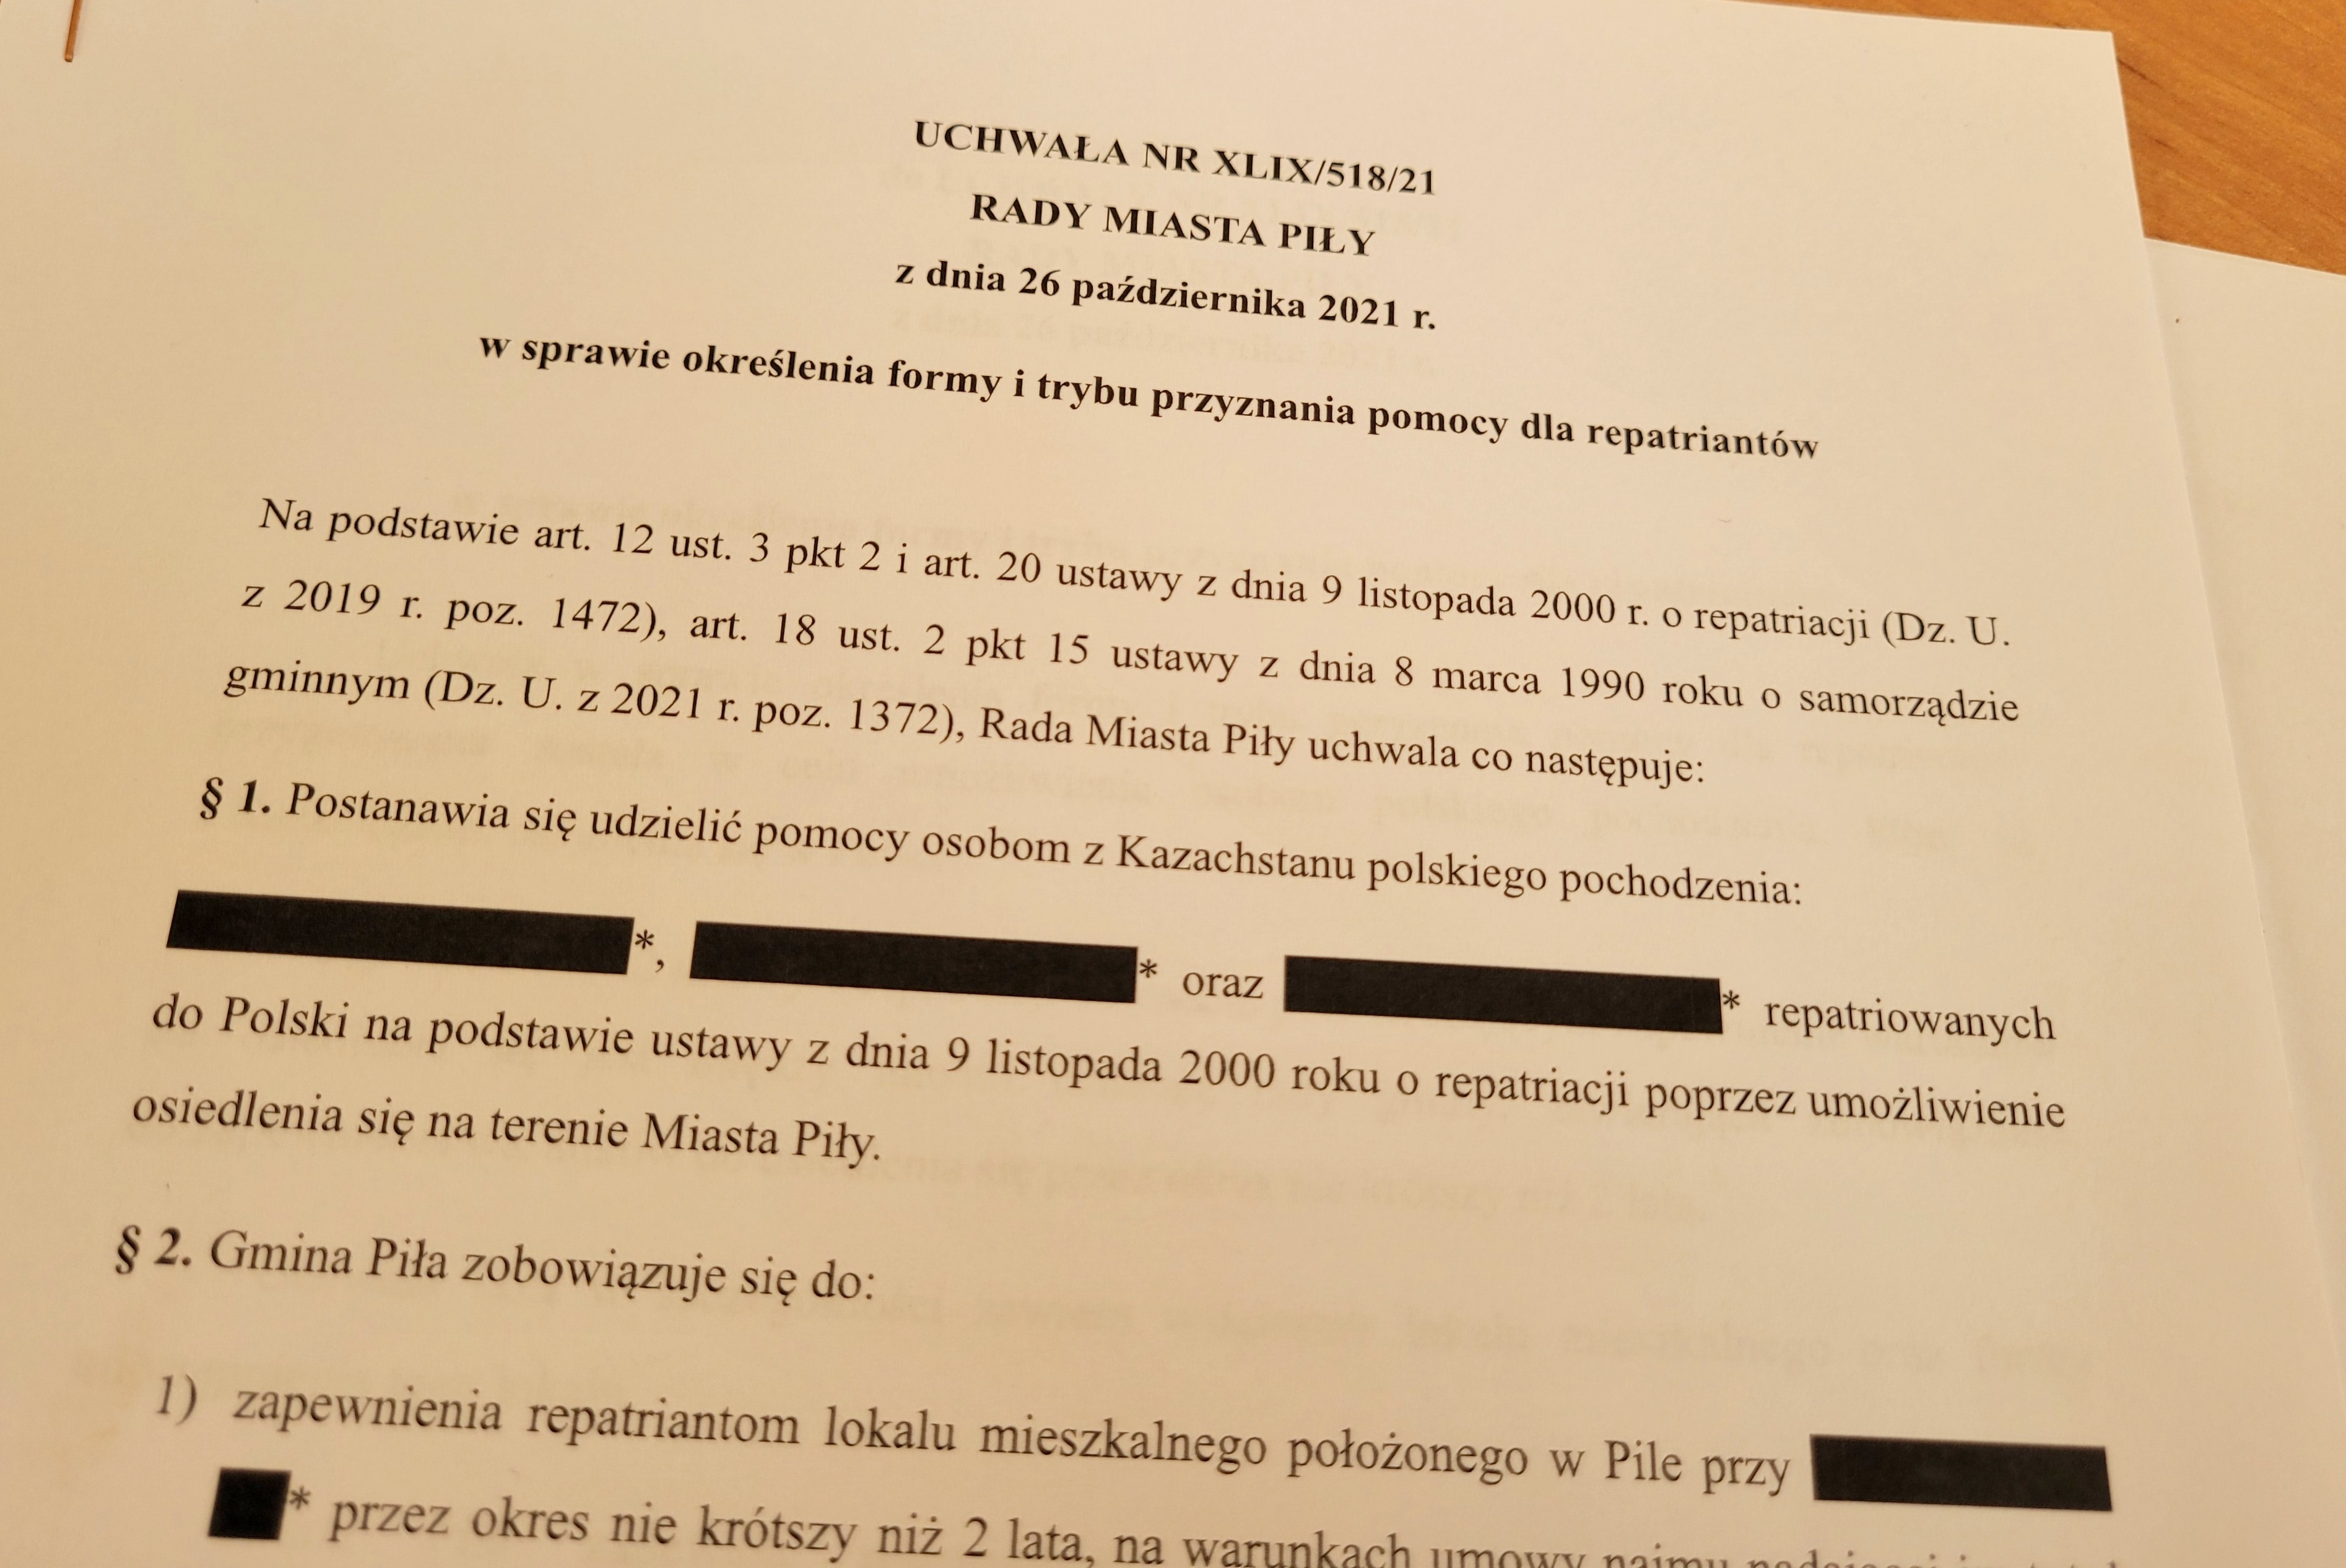 Dokument przedstawia treść uchwały Rady Miasta Piły o Repatriacji. Dokument jest dostępny tutaj: http://bip.pila.pl//cms_inc/cms_pobierz_dokument.php?id=153&dok_id=40048